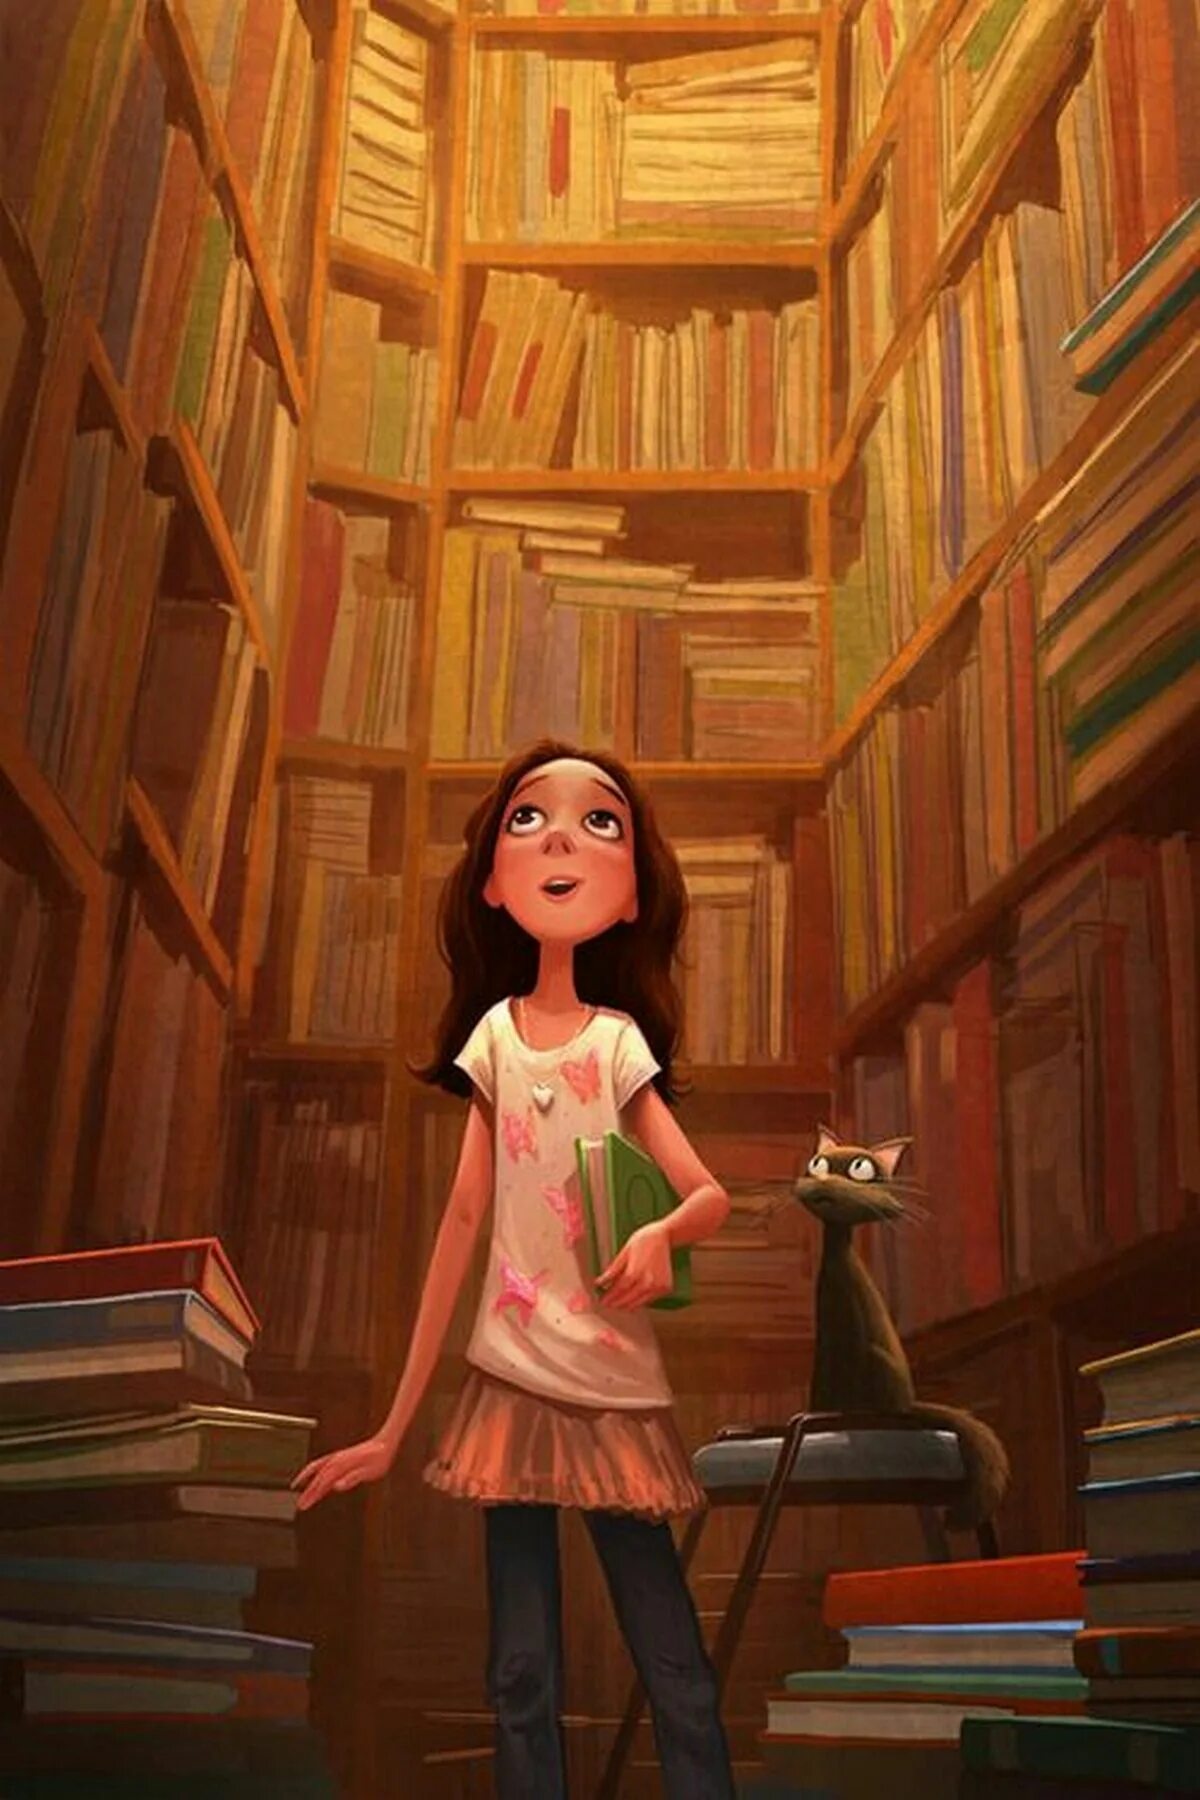 Я люблю читать книги где. Иллюстрации к книгам. Чтение книг. Аватарка для библиотеки. Персонажи в библиотеке.